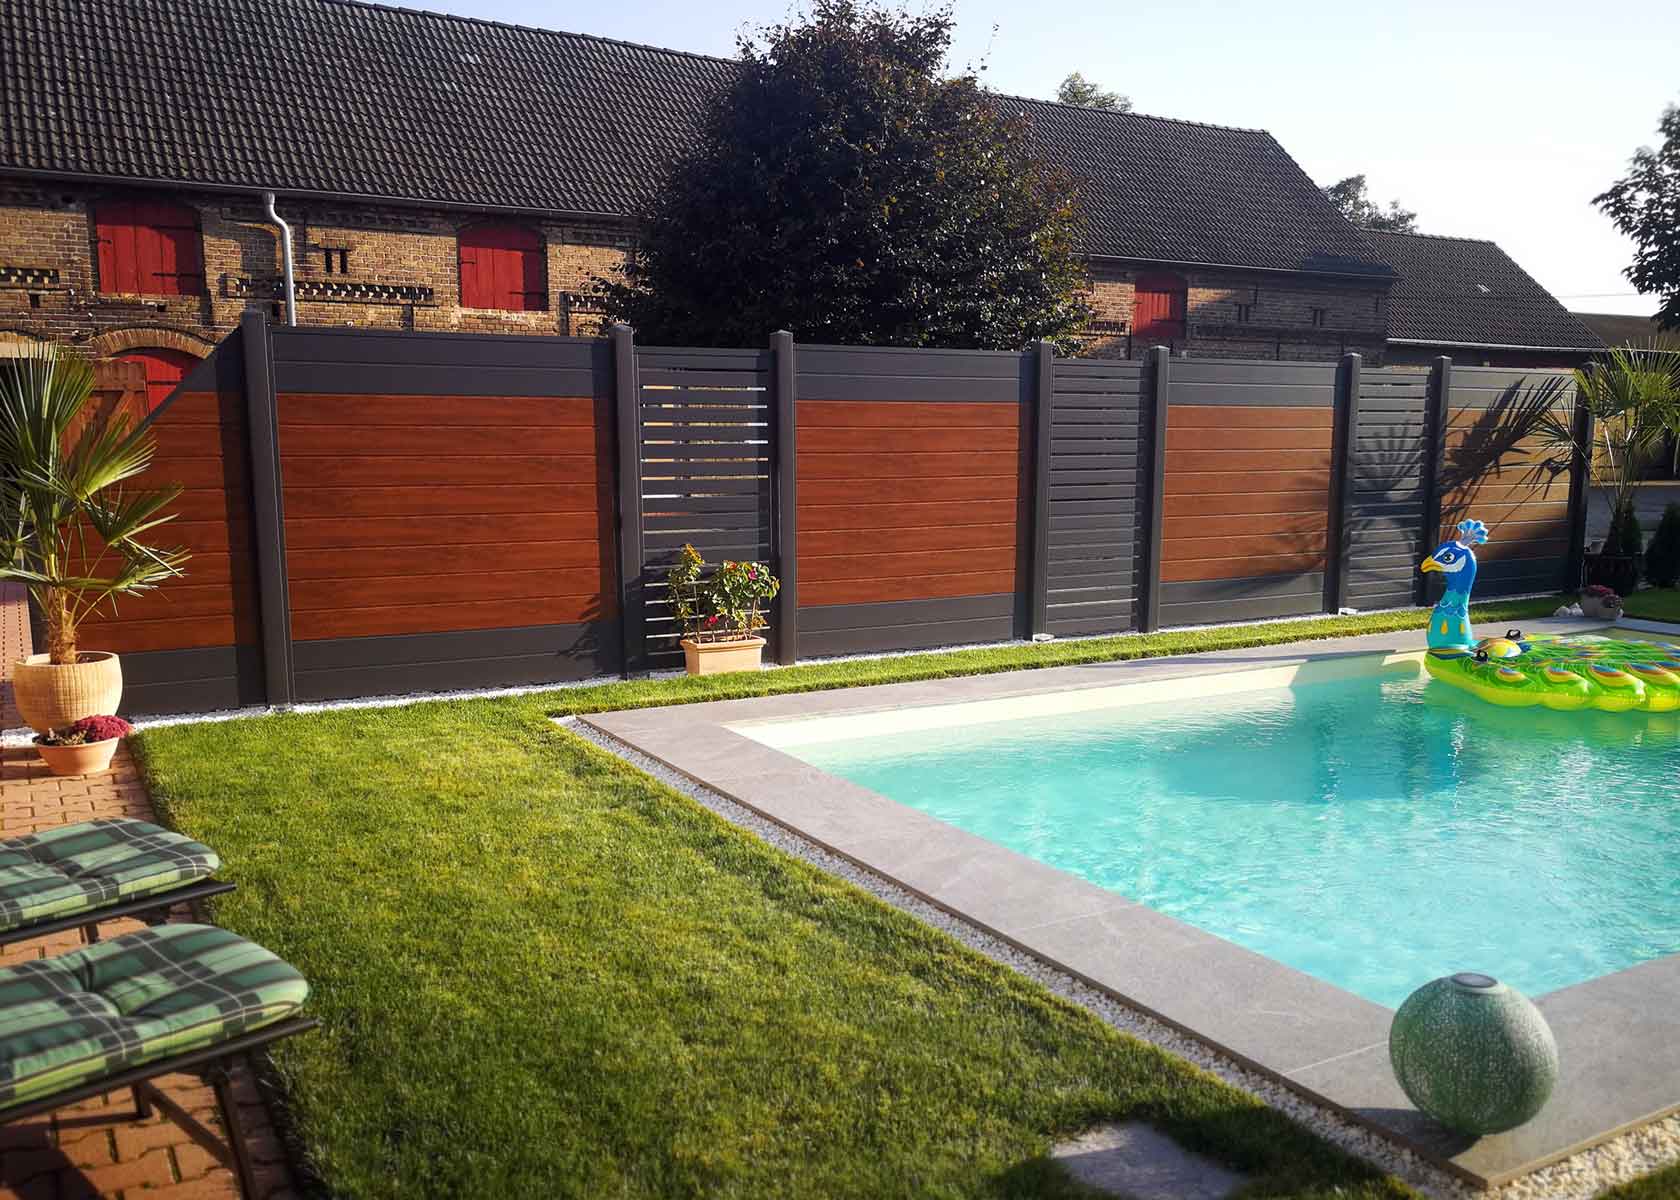 Sichtschutz mit Spaltsichtschutzwand um den Swimming-Pool in Golden Oak Holzoptik und Anthrazit aus Kunststoff